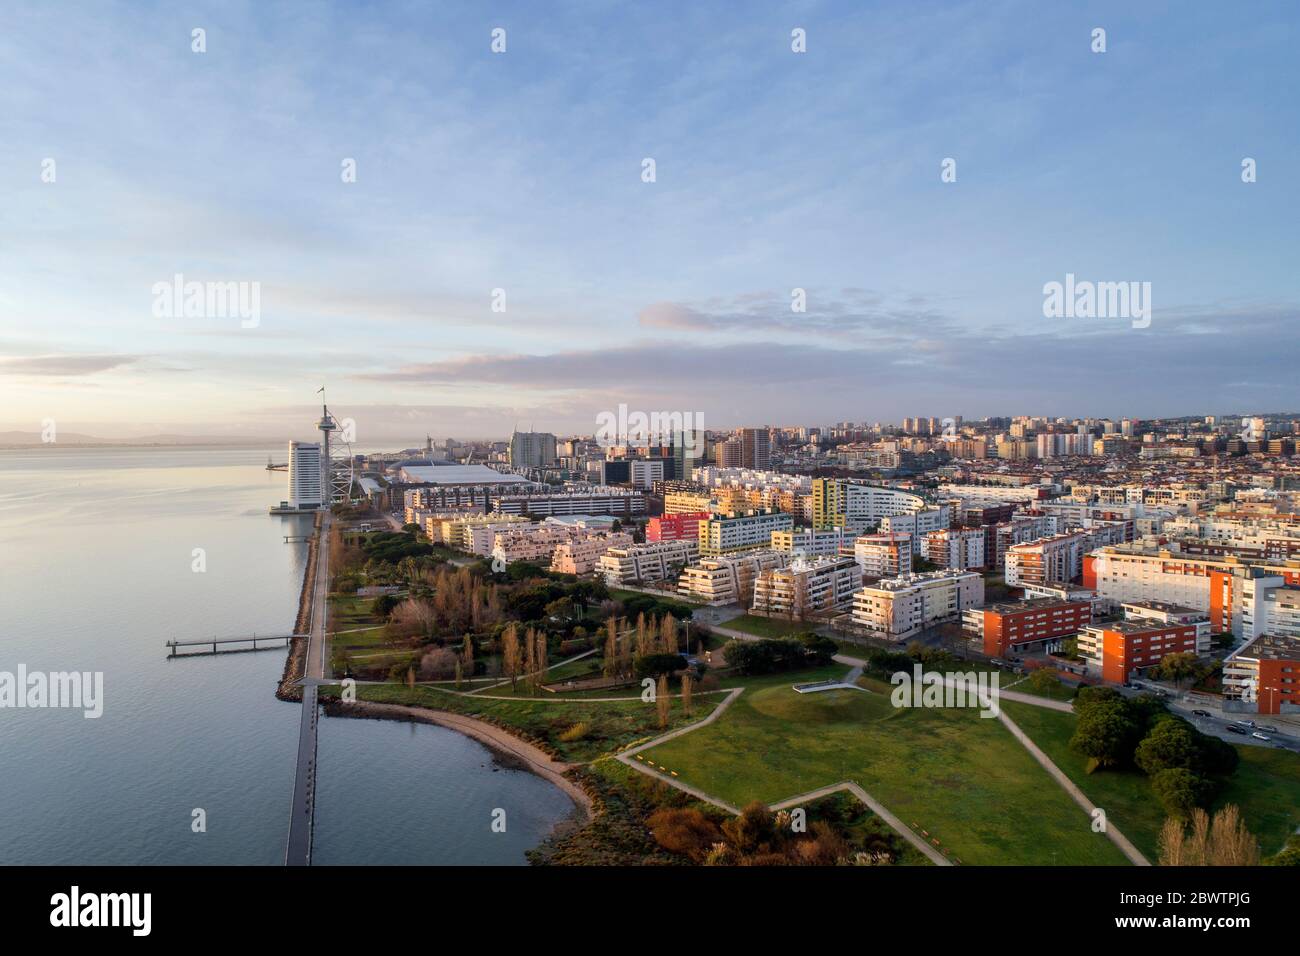 Portugal, Lisbonne, Drone vue sur le quartier résidentiel de la ville côtière au crépuscule Banque D'Images